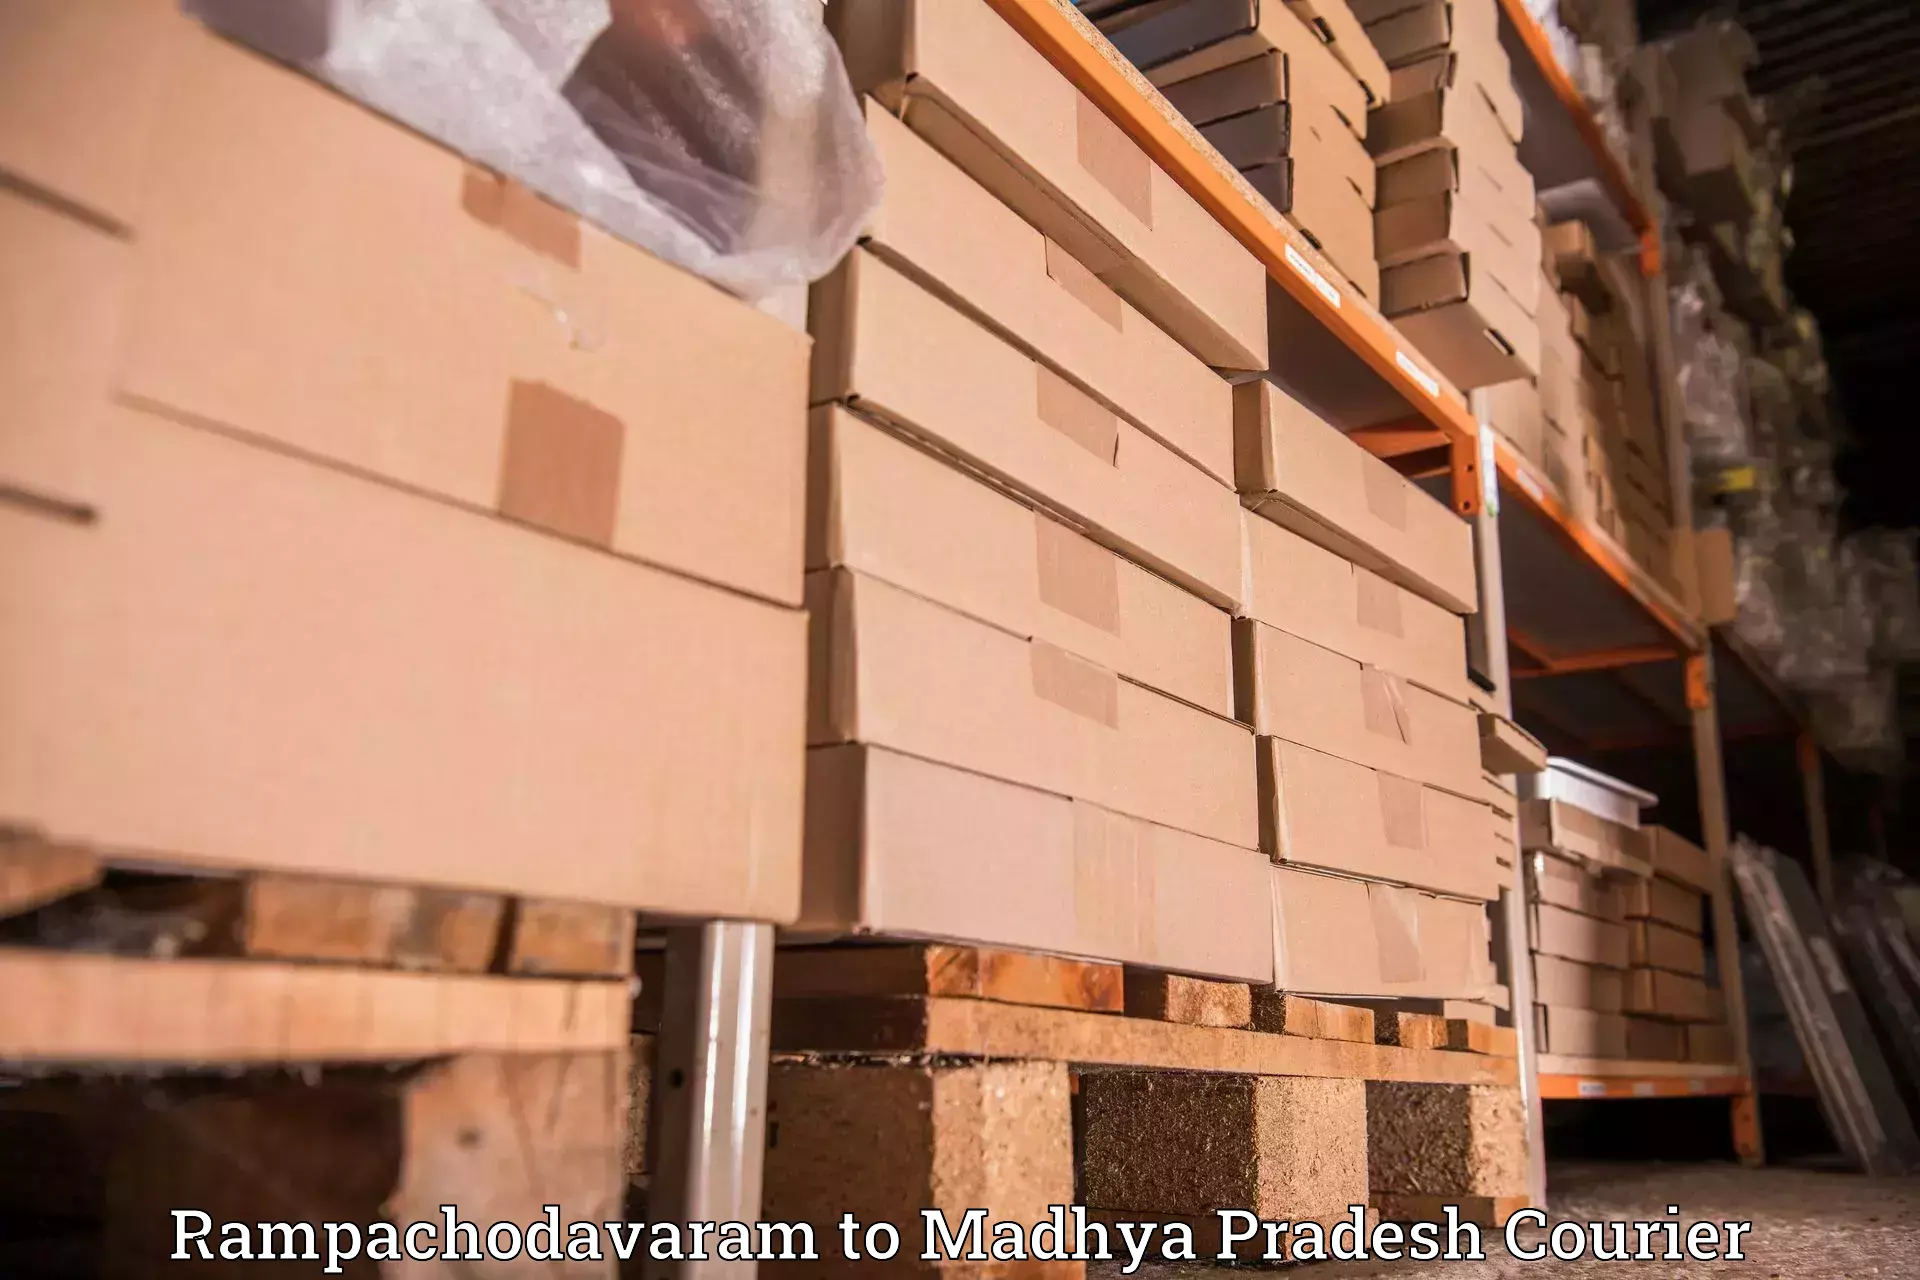 Supply chain efficiency Rampachodavaram to Majhgawa